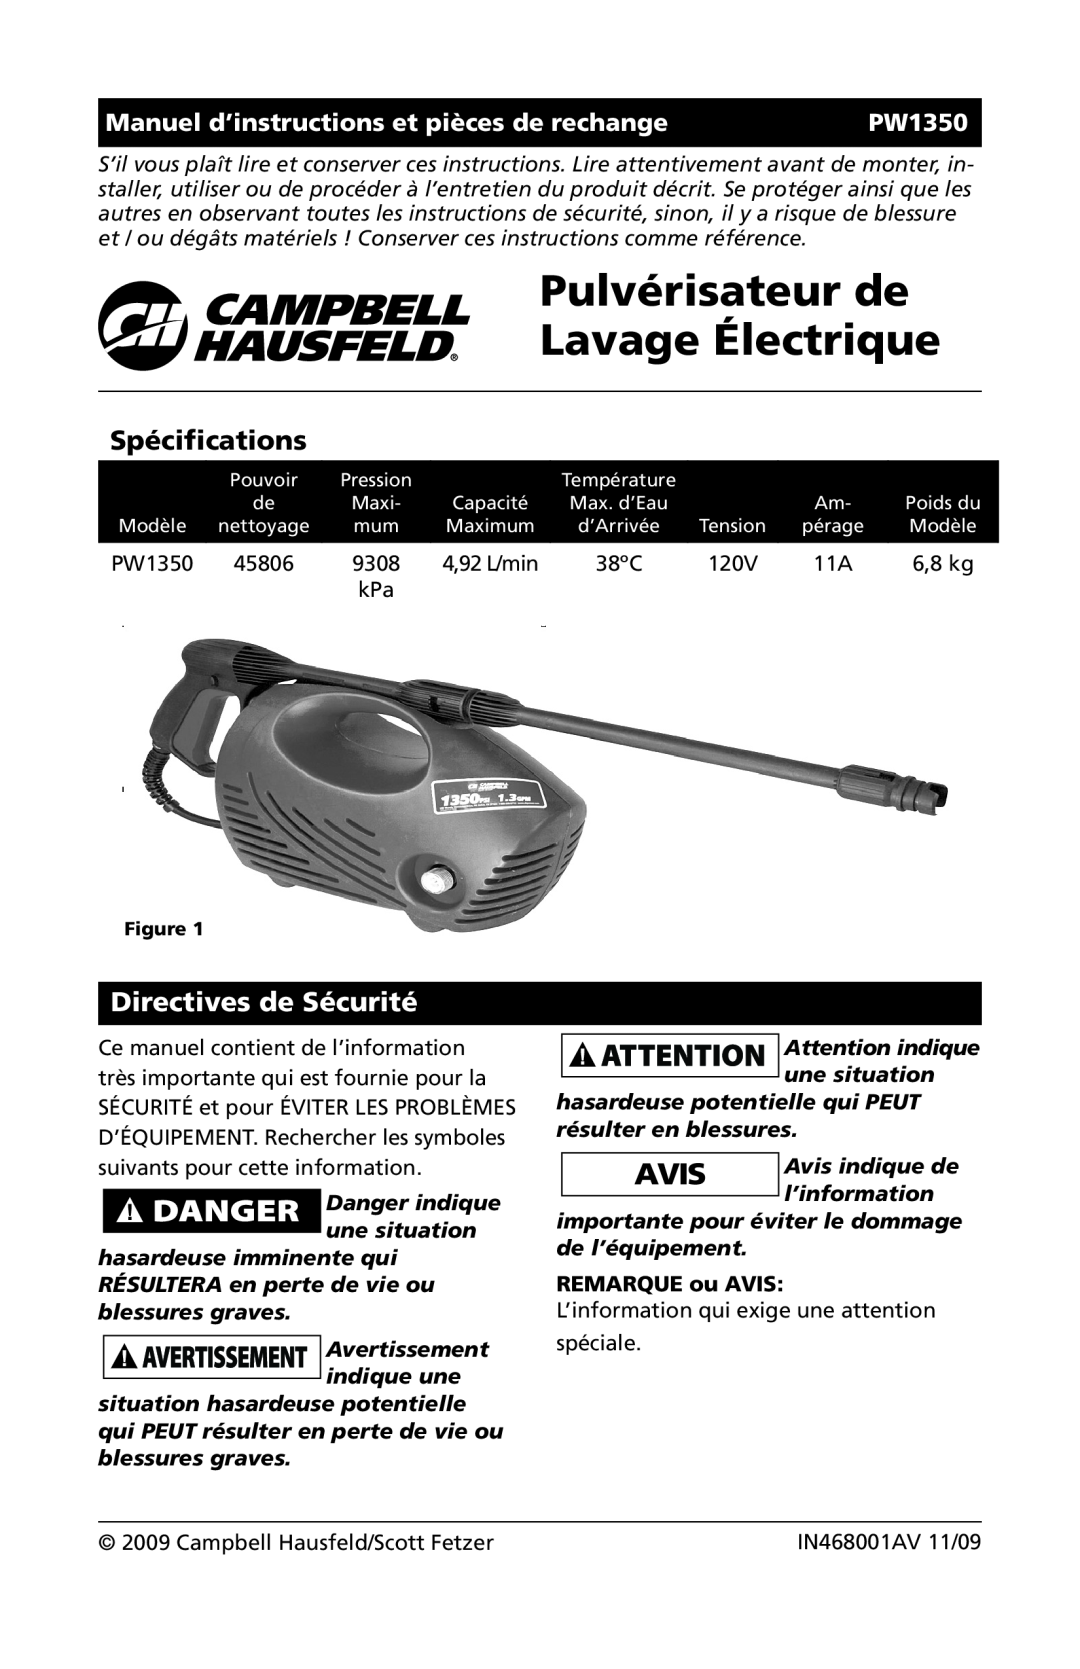 Campbell Hausfeld IN468001AV Pulvérisateur de Lavage Électrique, Spécifications, Directives de Sécurité, 6,8 kg, PW1350 